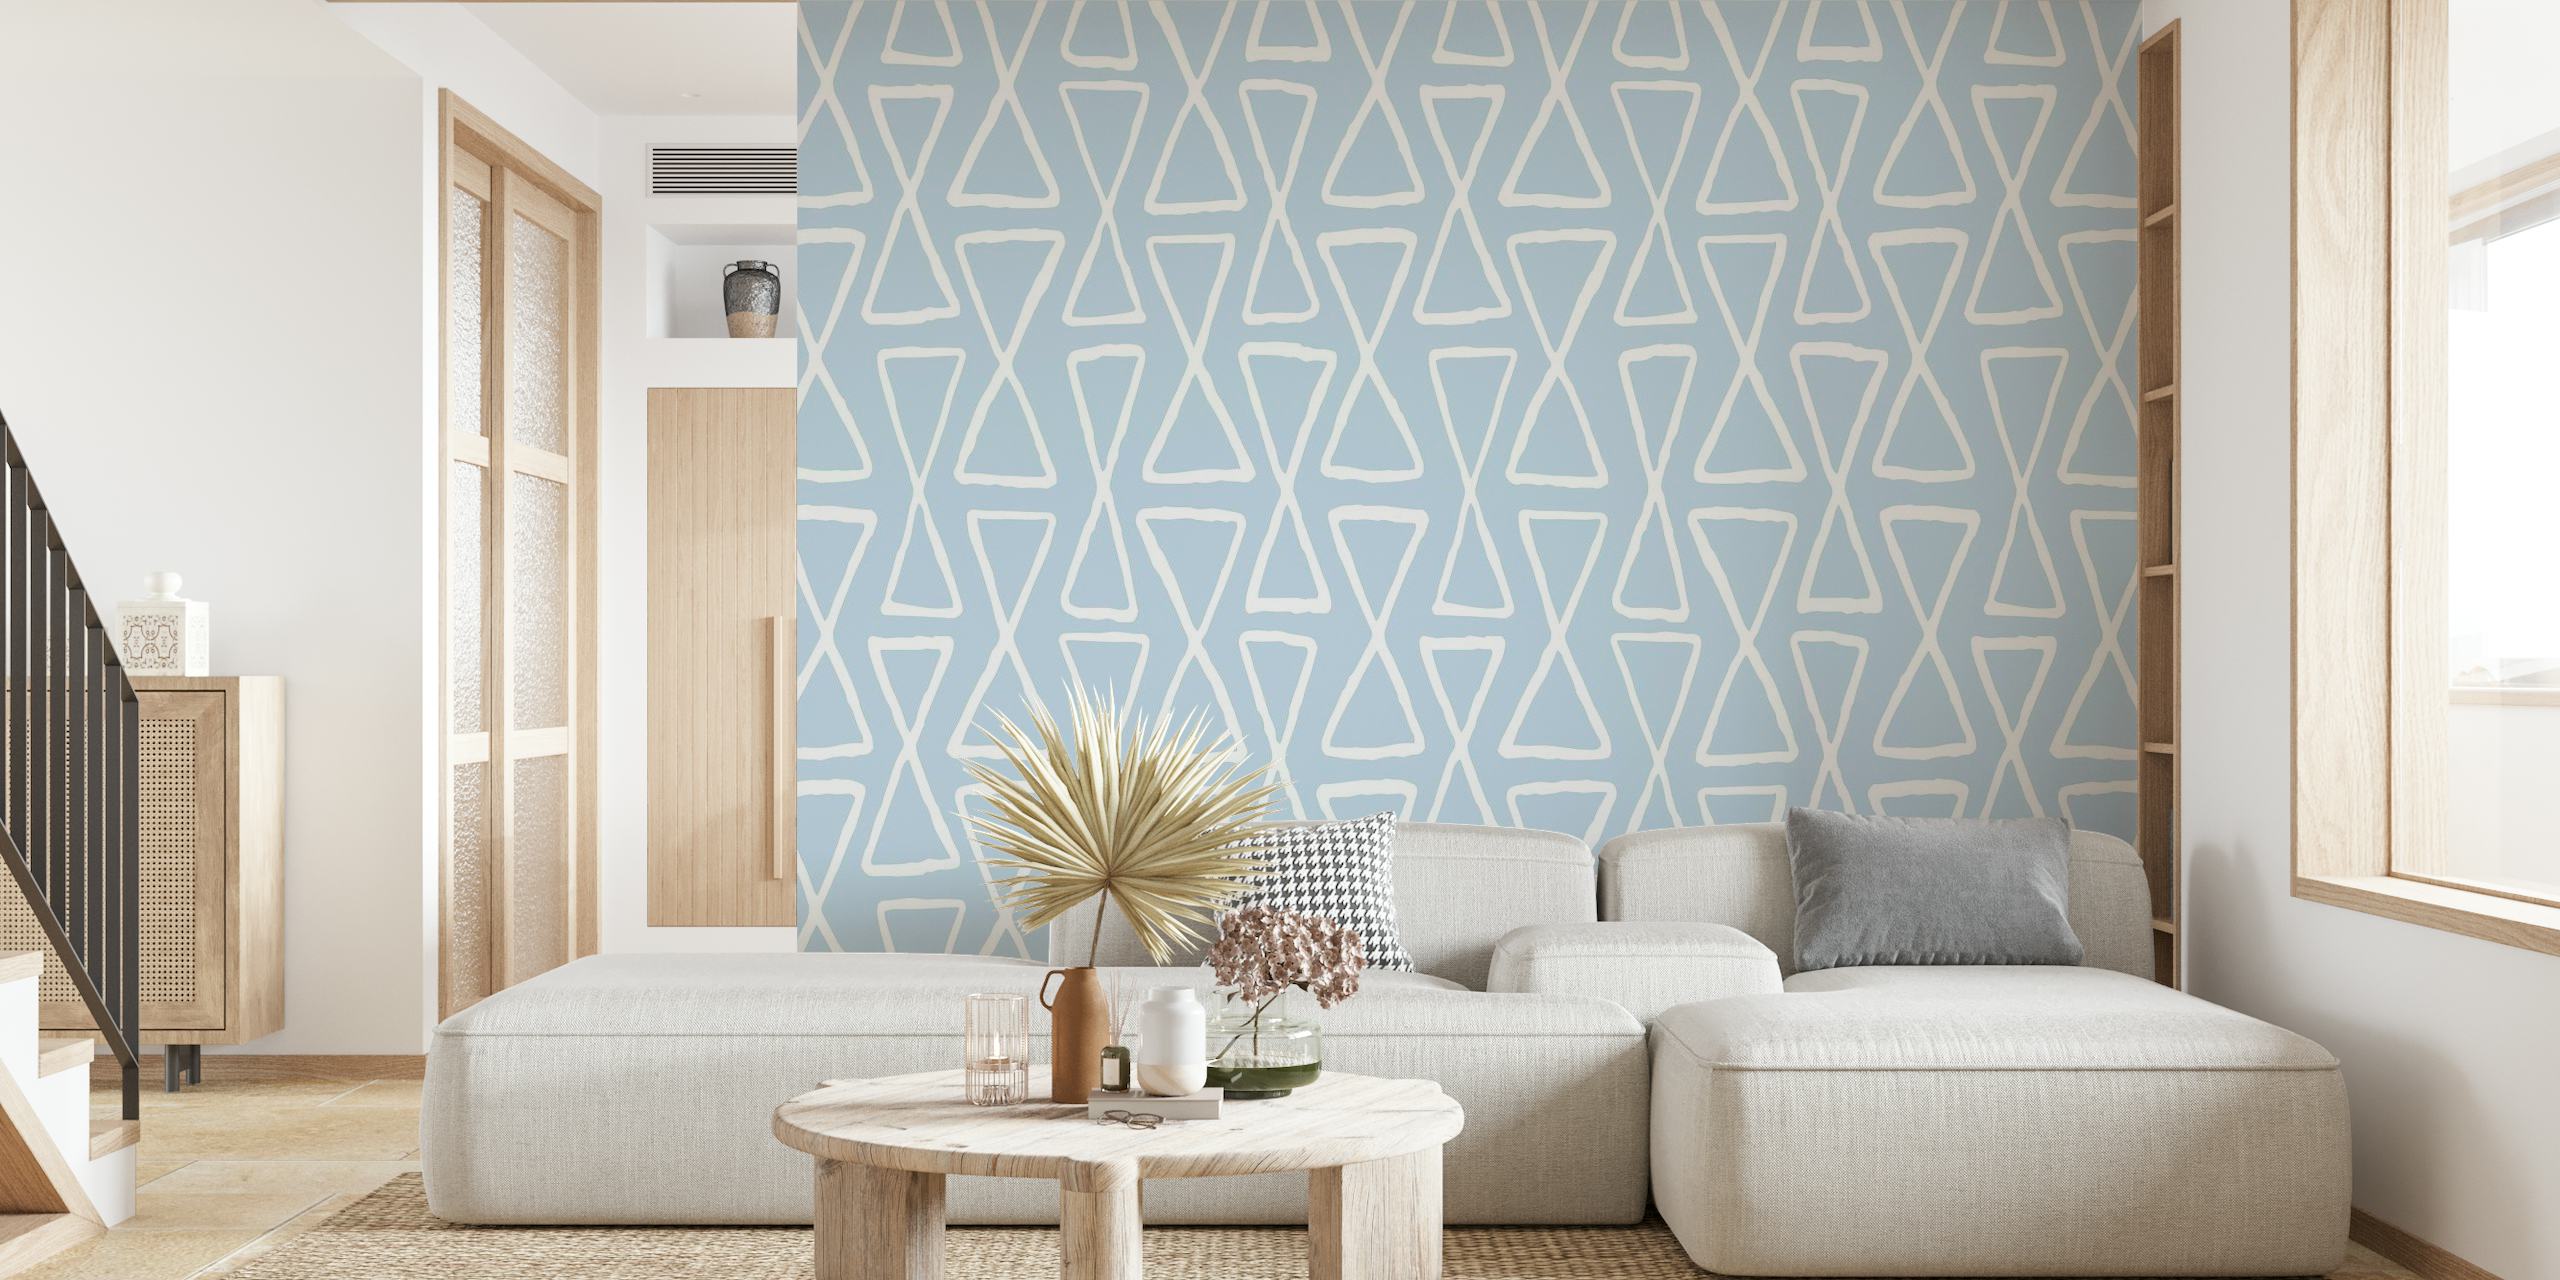 Sanduhr weißes geometrisches Muster auf blauem Hintergrund für Wandbild